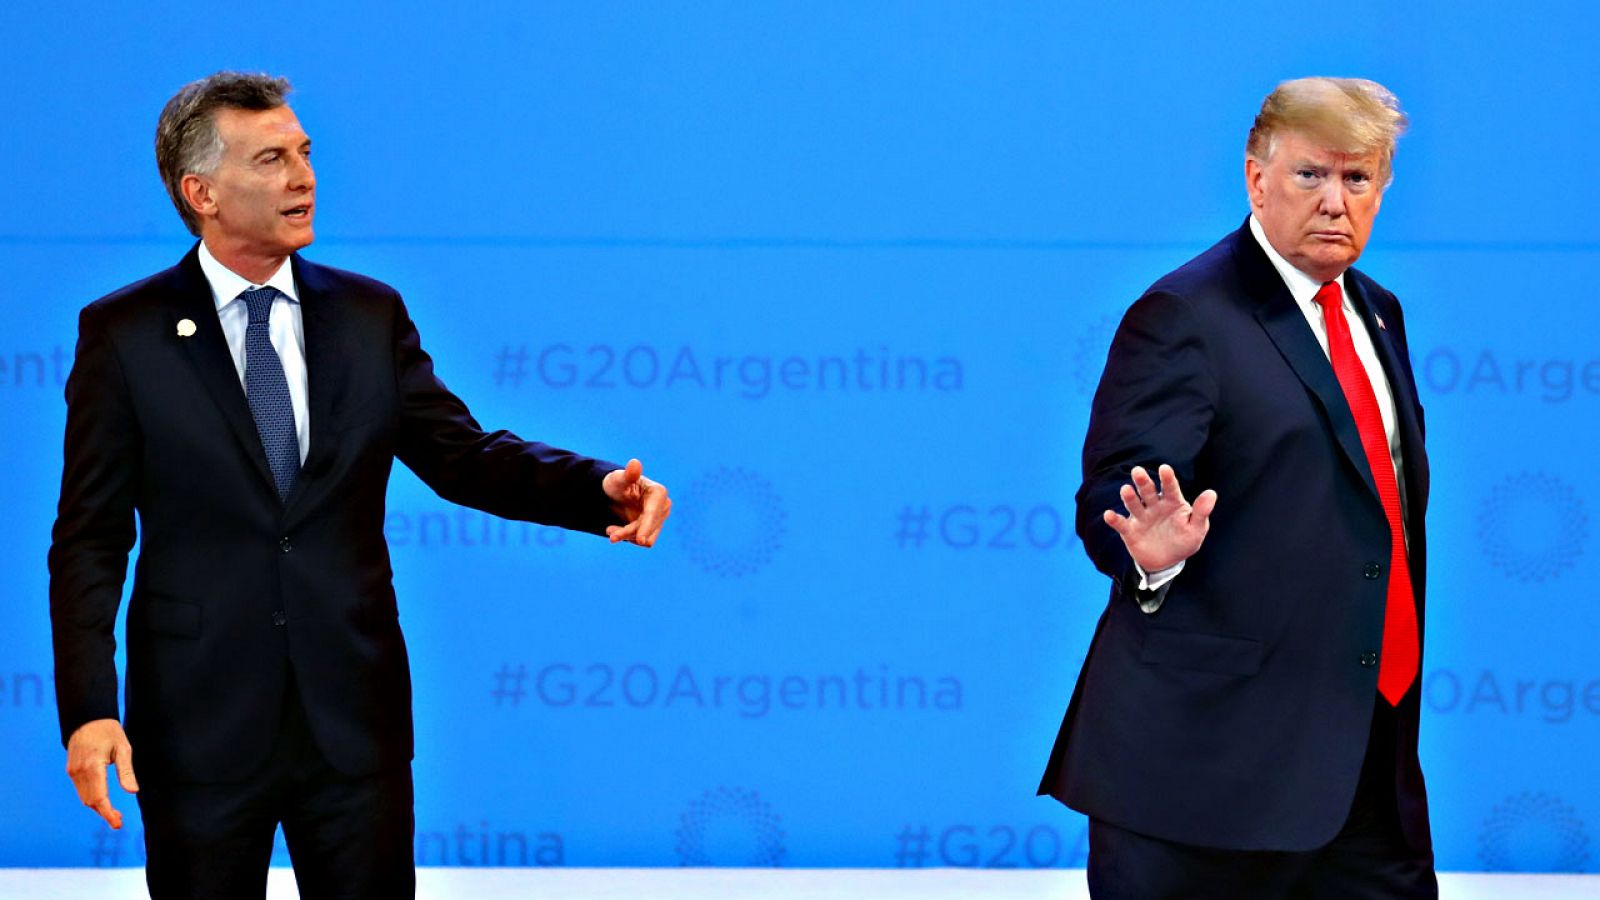 El presidente argentino, Mauricio Macri, recibe al presidente de Estados Unidos, Donald Trump, en la cumbre del G20